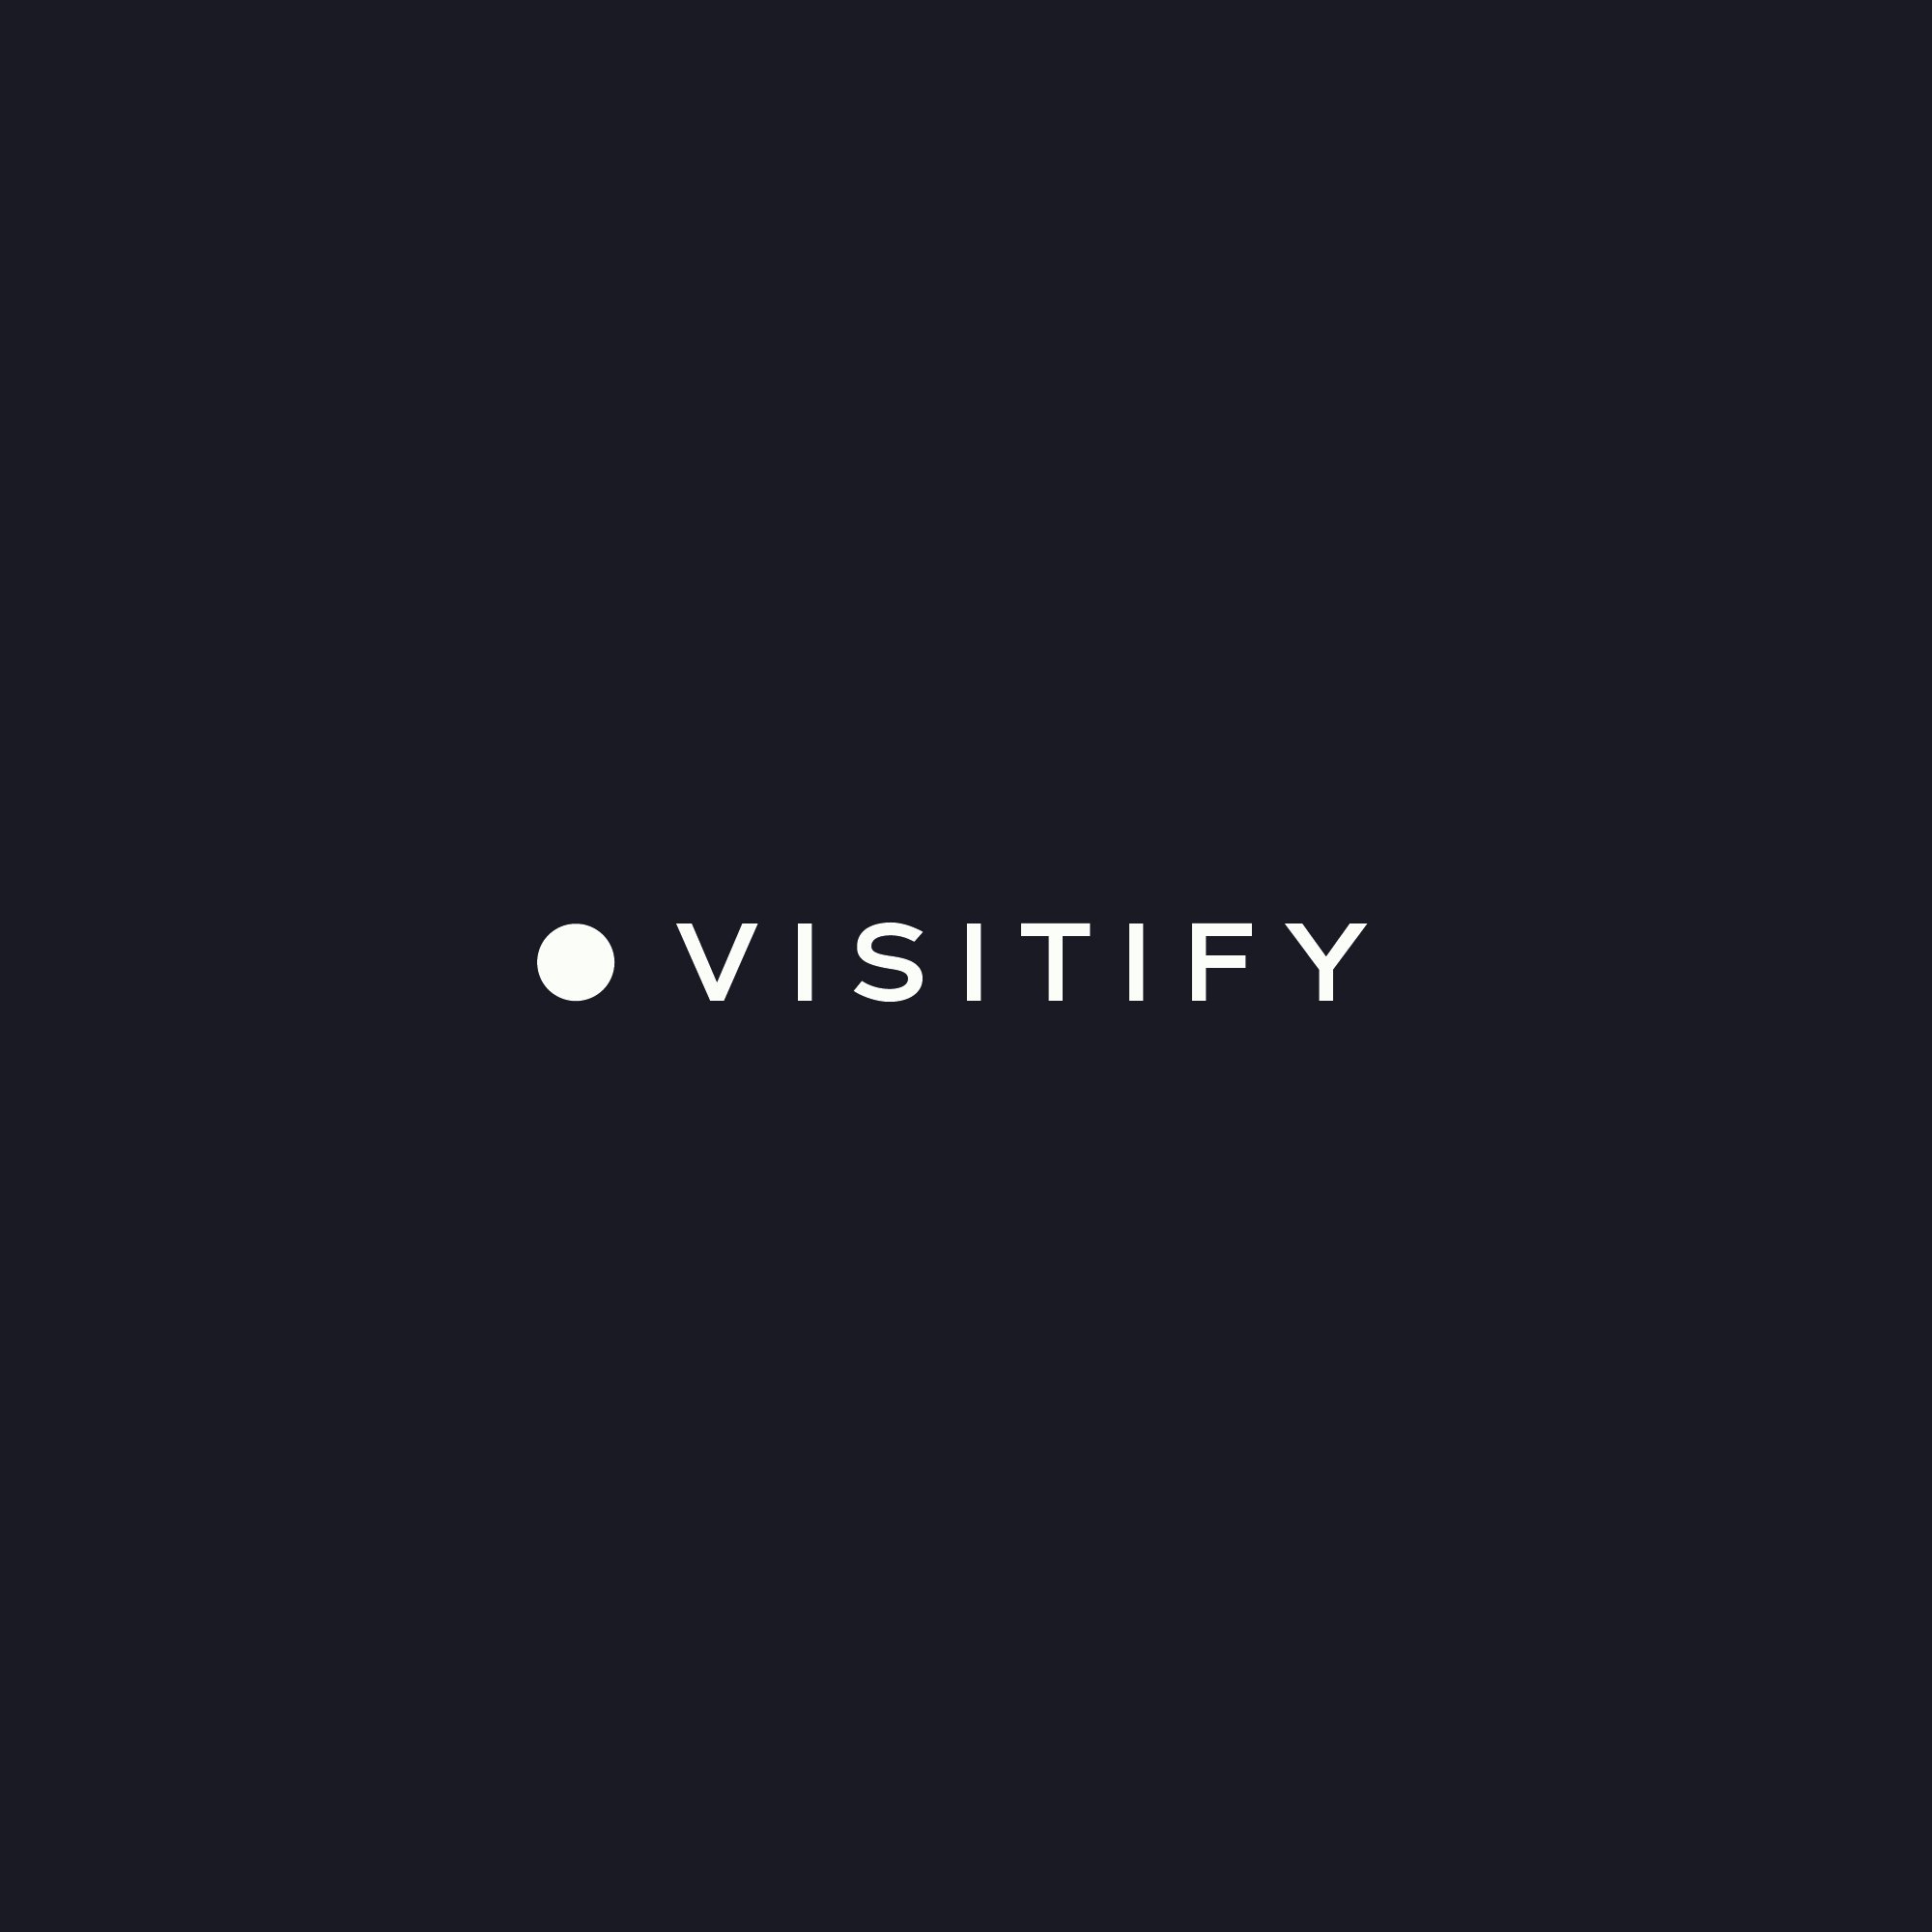 Visitify